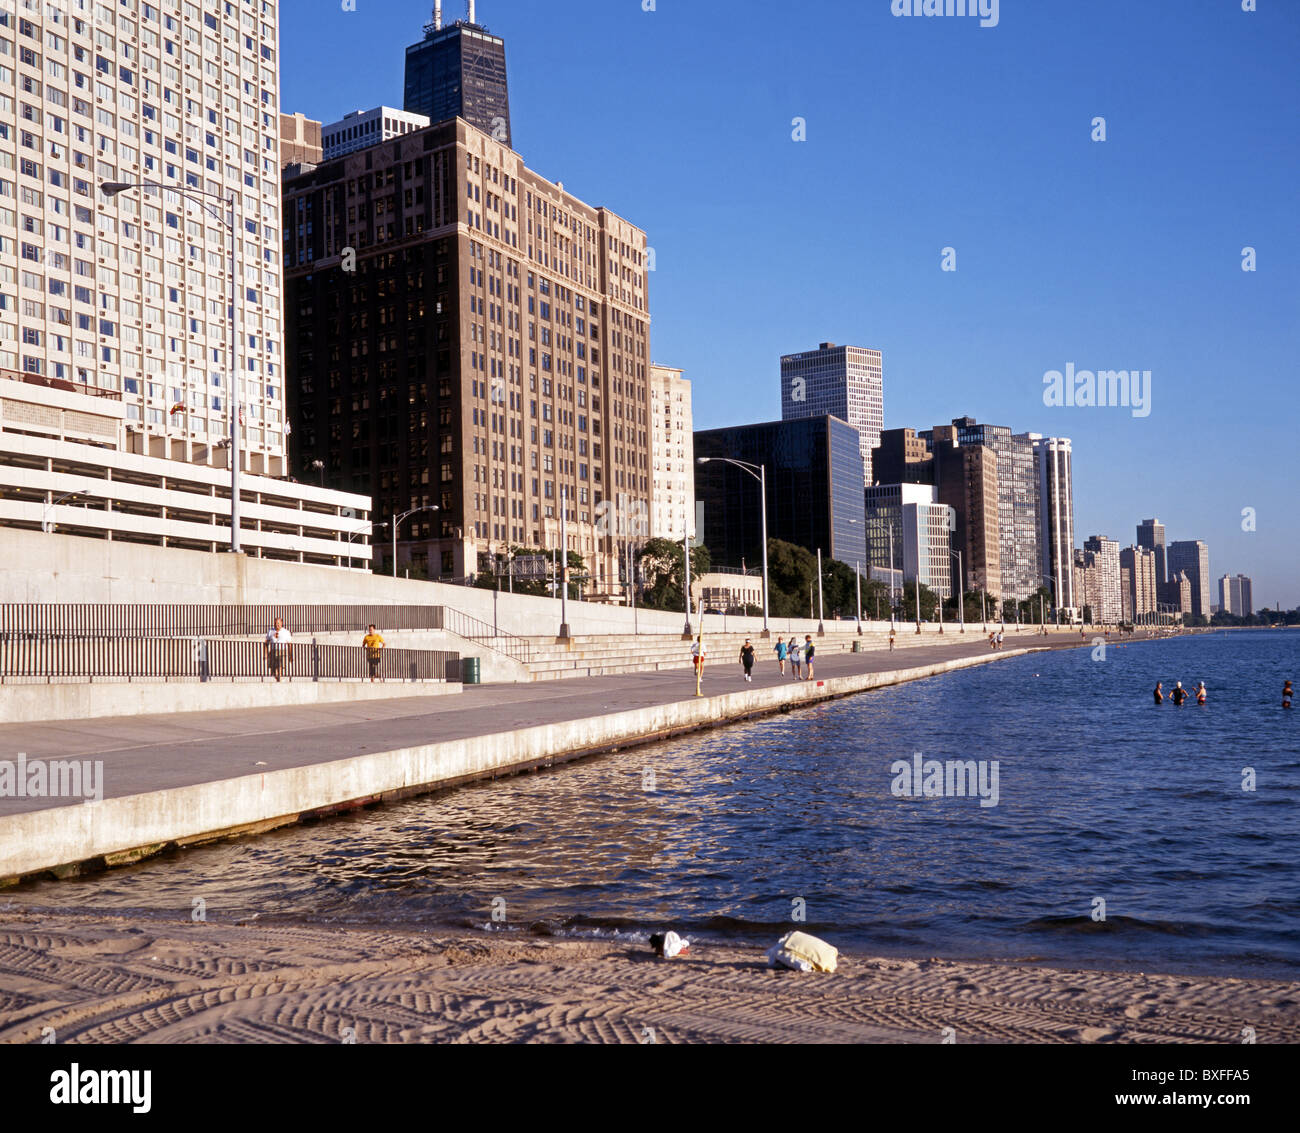 Waterfront apartment blocks, Chicago, Illinois, USA. Stock Photo